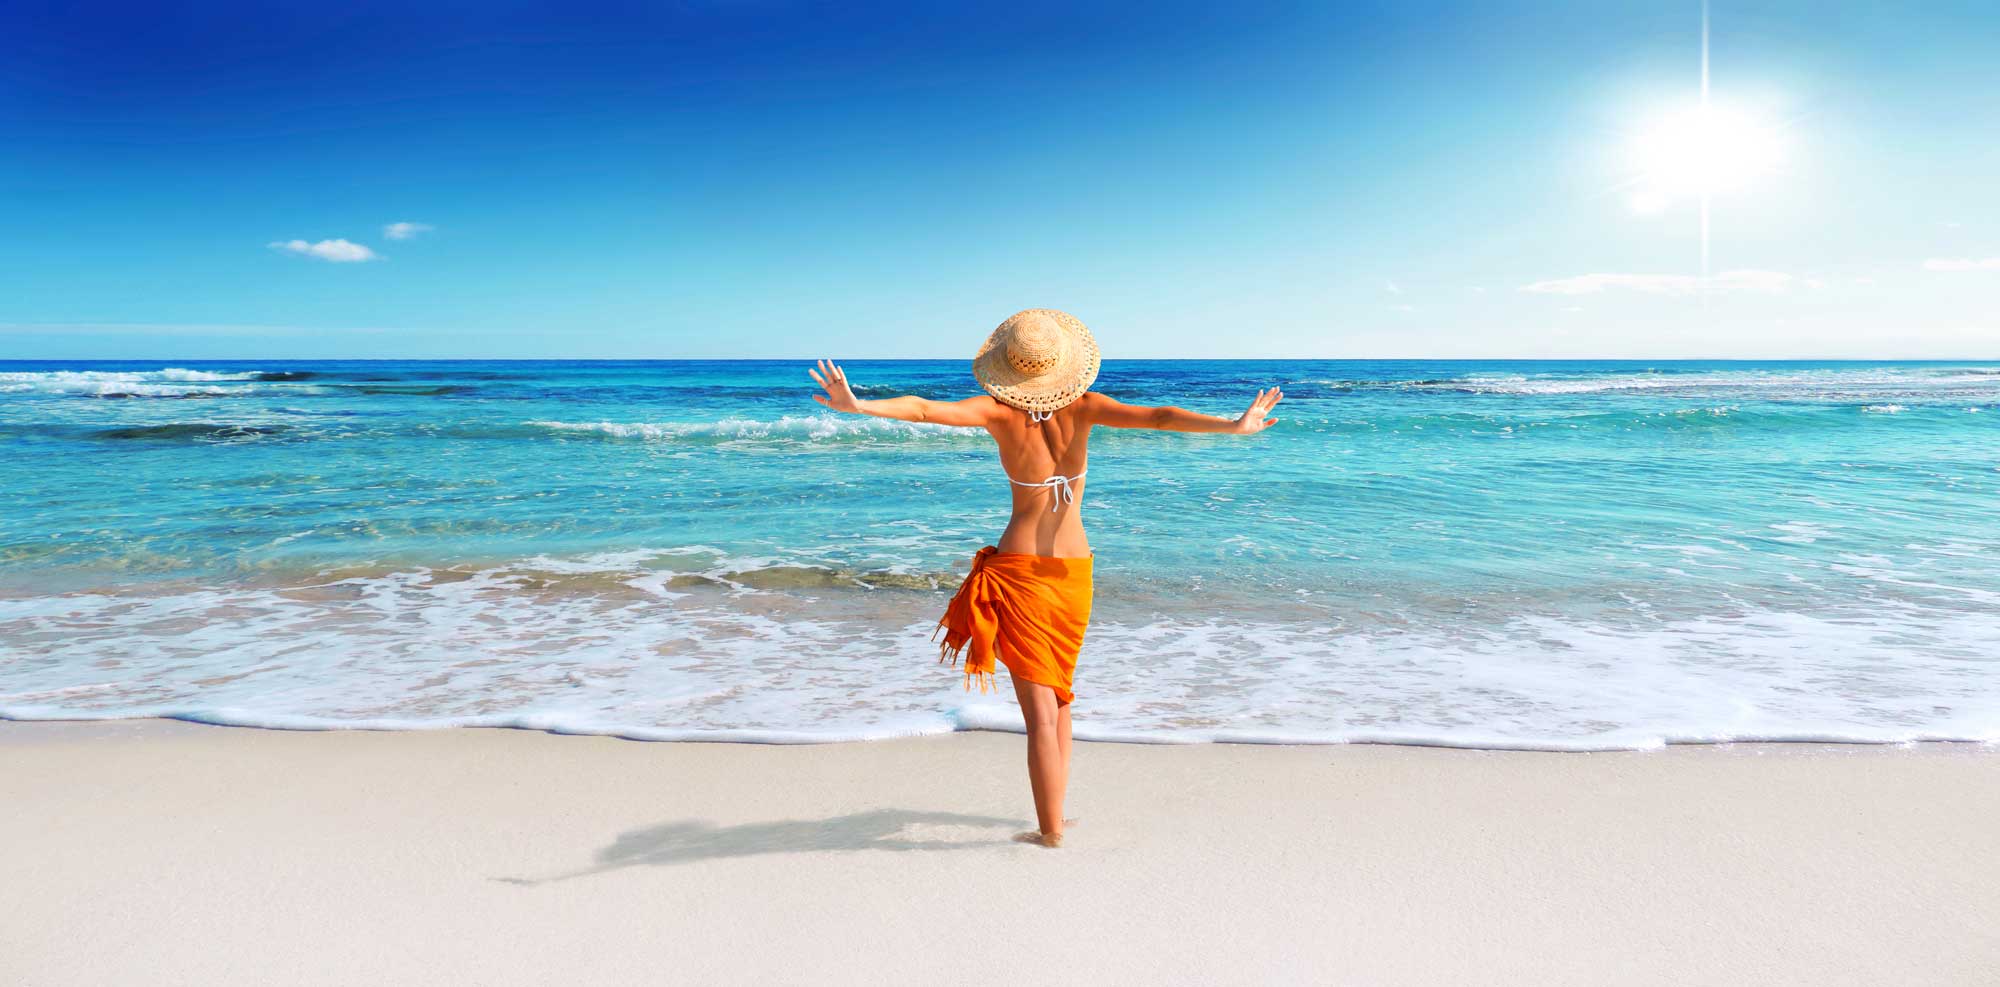 Eine Dame an einem azurblauen Strand am Posieren mit dem Rücken in die Kamera